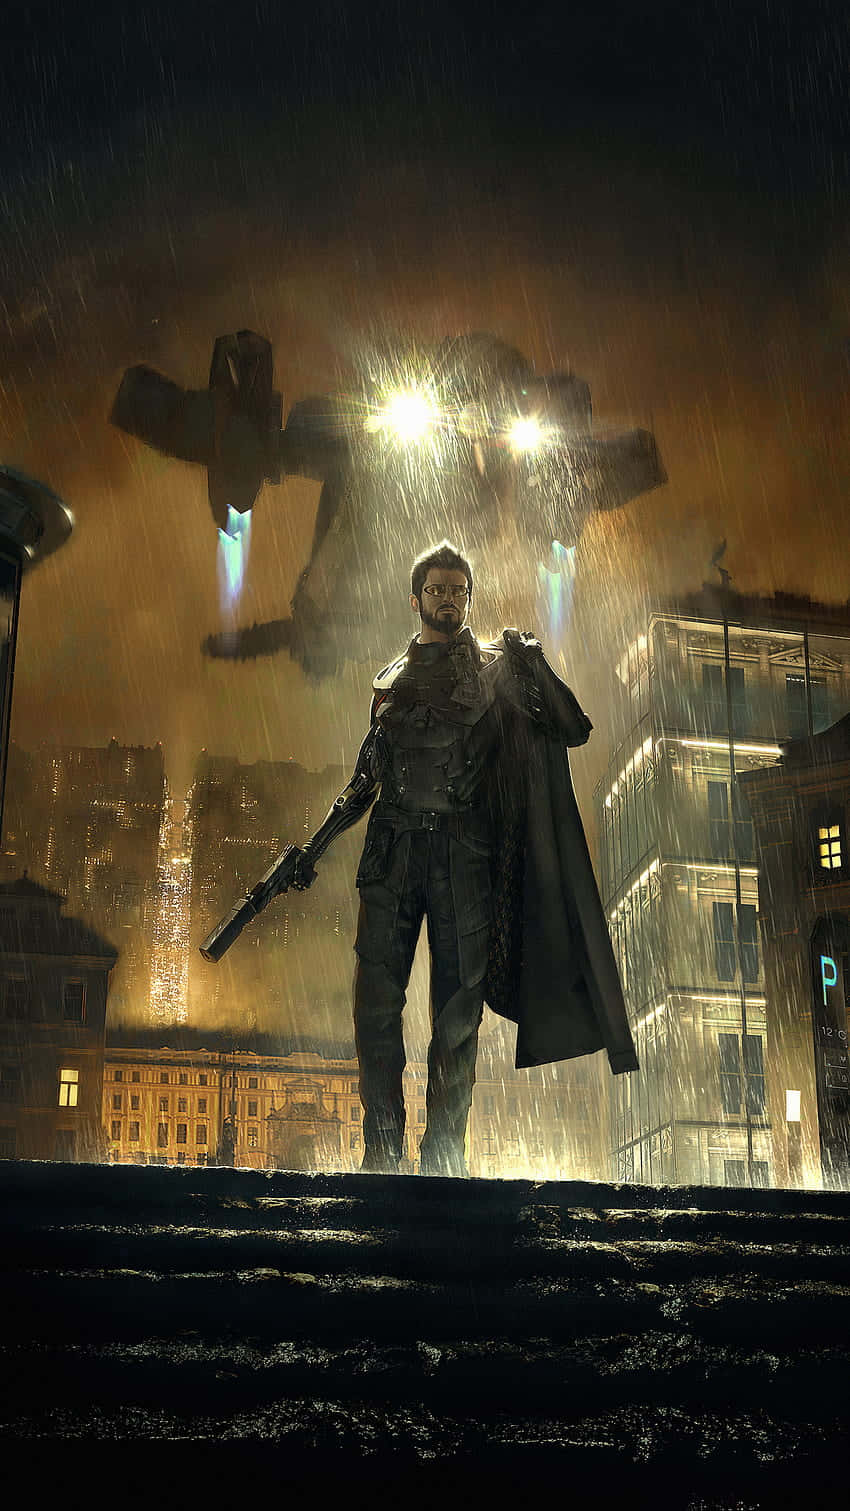 Cyberpunk adventure awaits in Deus Ex: Mankind Divided